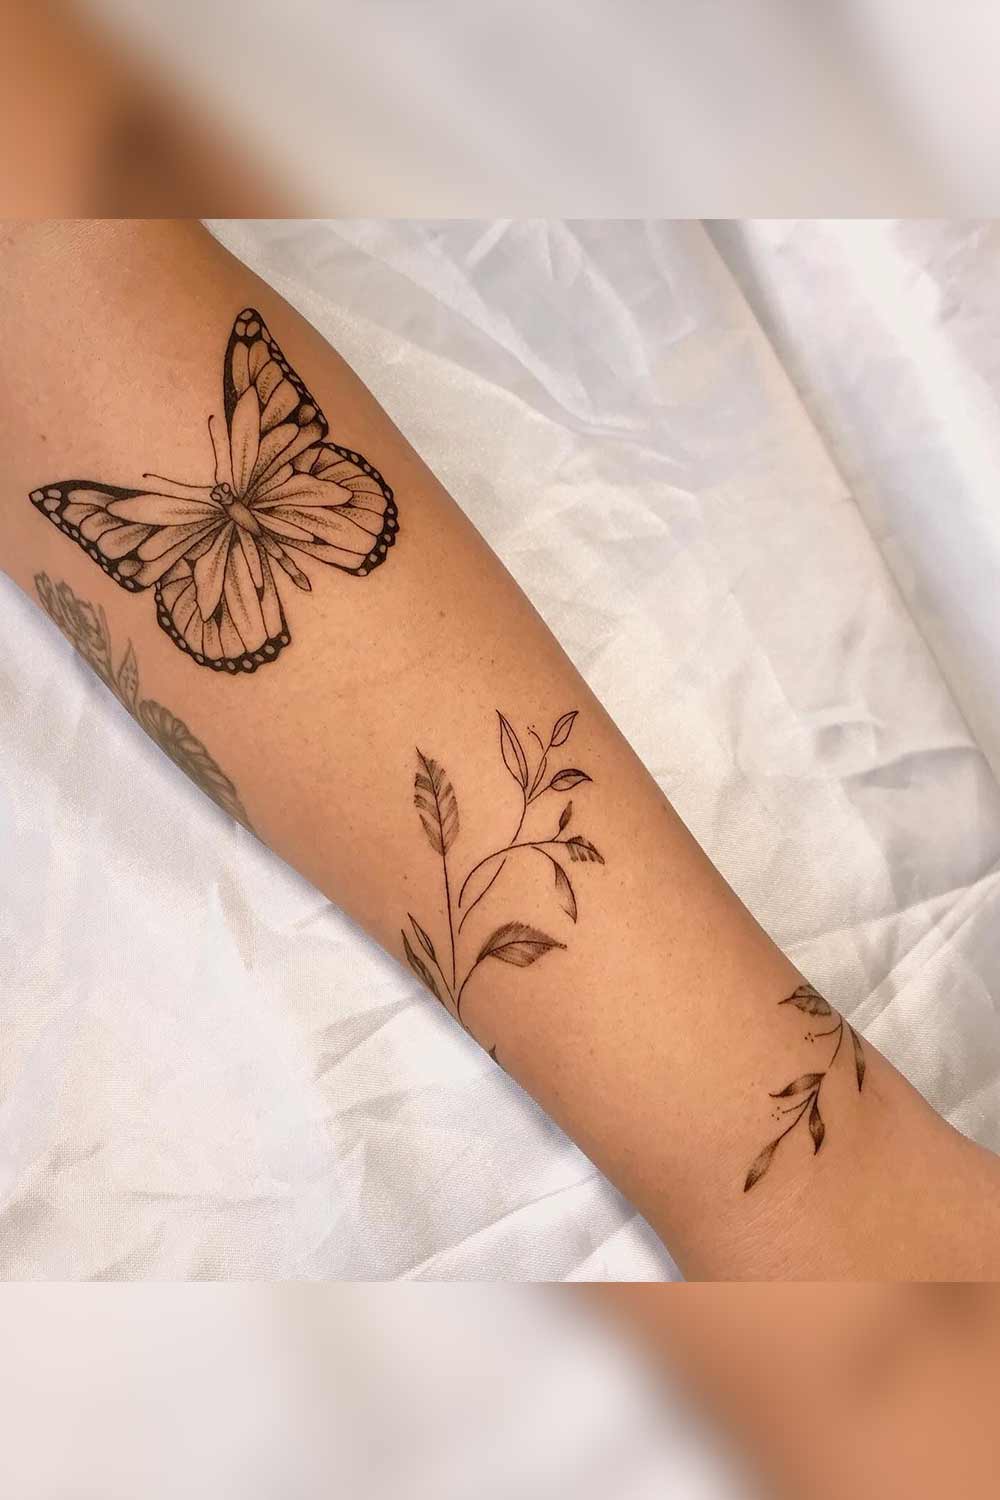 tatuagem-de-borboleta-e-planta-no-antebraco 